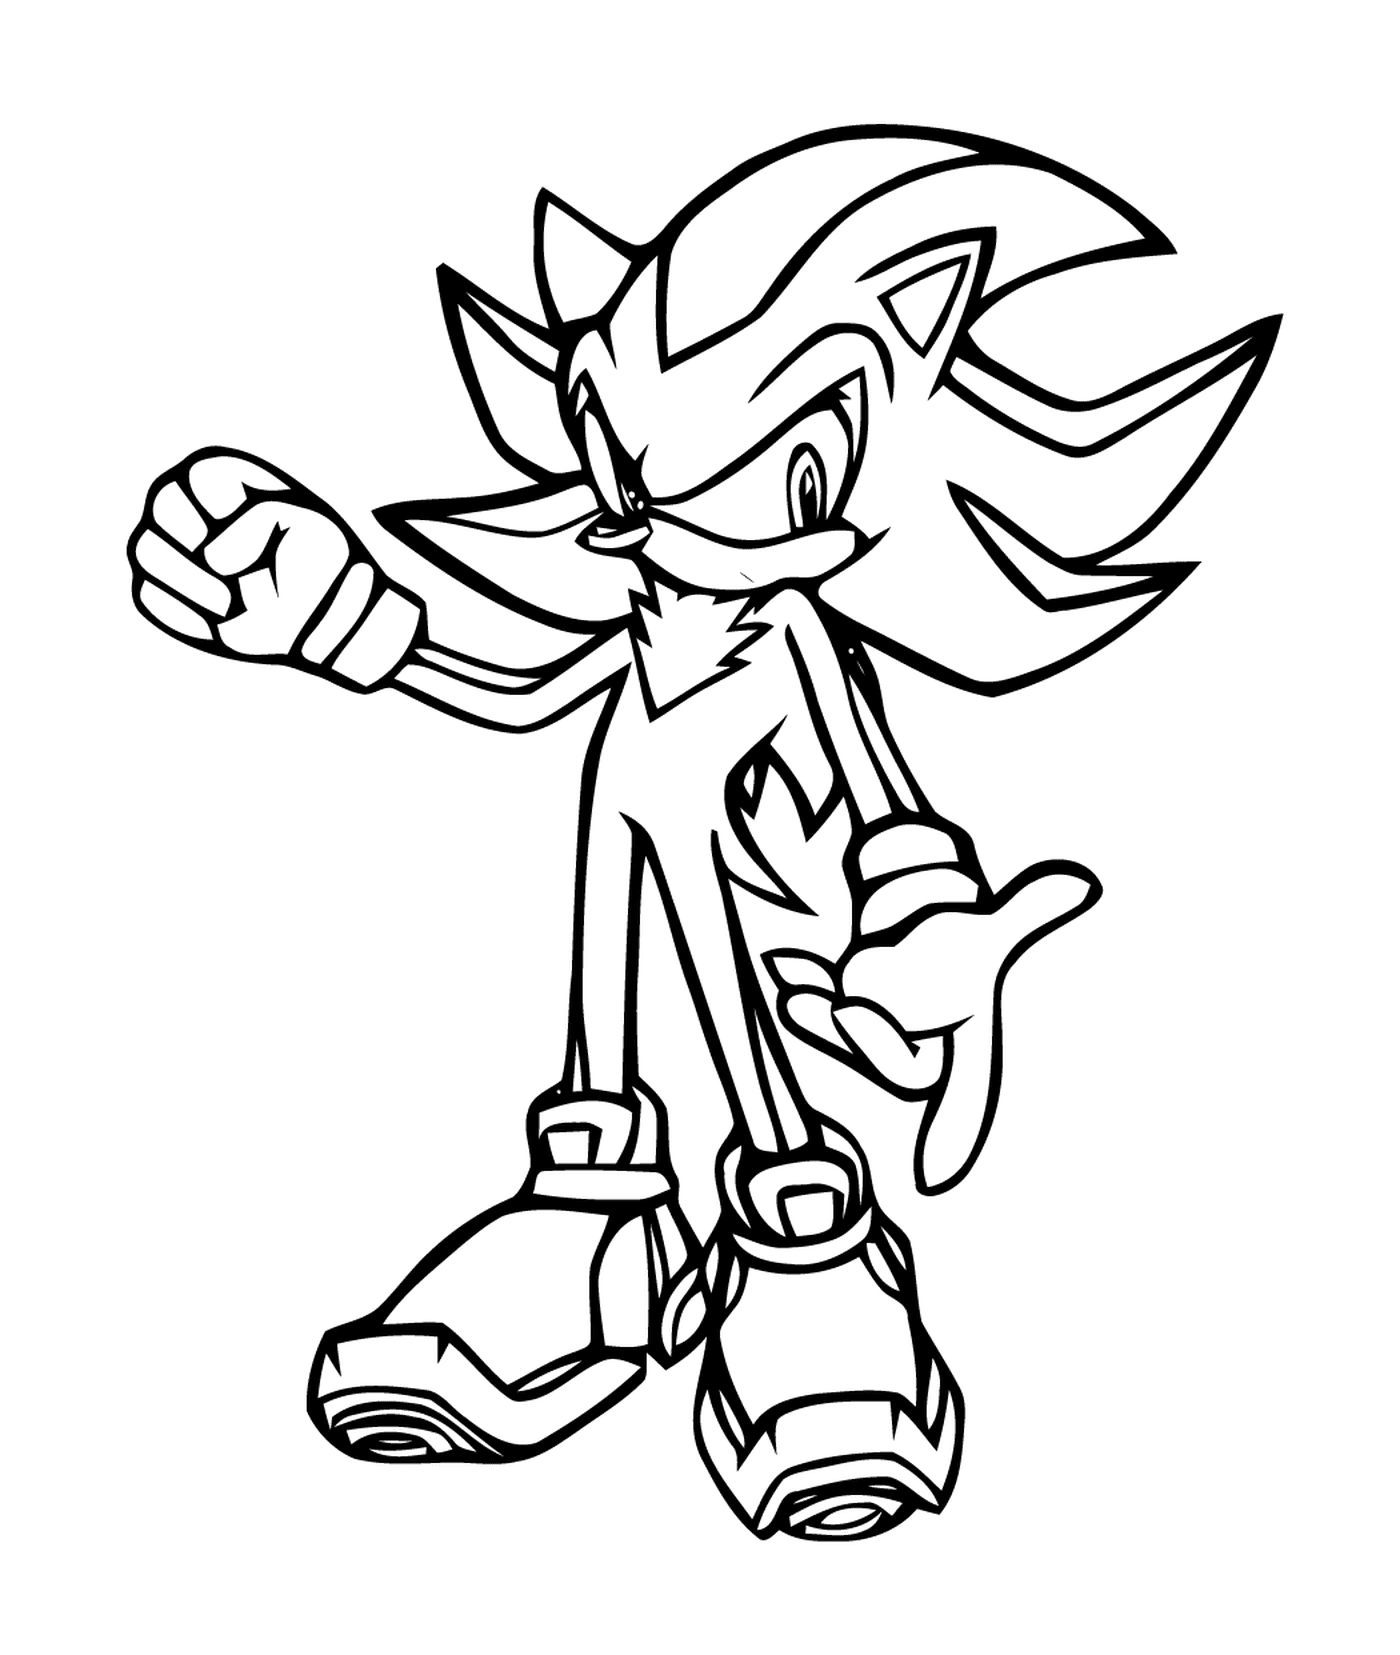  Agile e veloce Sonic 